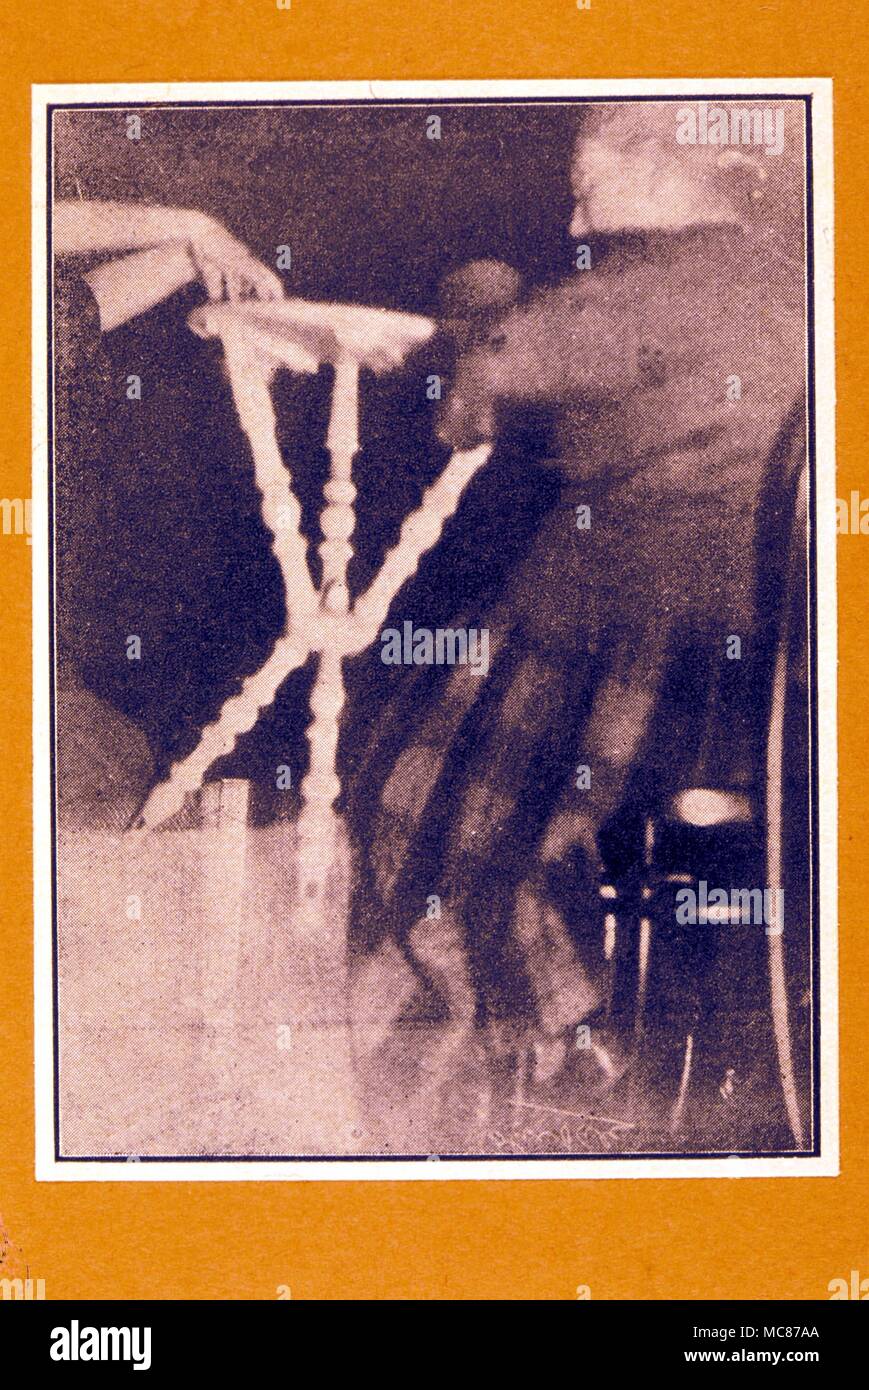 SEANCE - levitación flash fotográfico mostrando la levitación de seance Warrick-Deane seances tabla durante el 31 de julio de 1923. Hay un disparo simultáneo correspondiente. Foto de stock